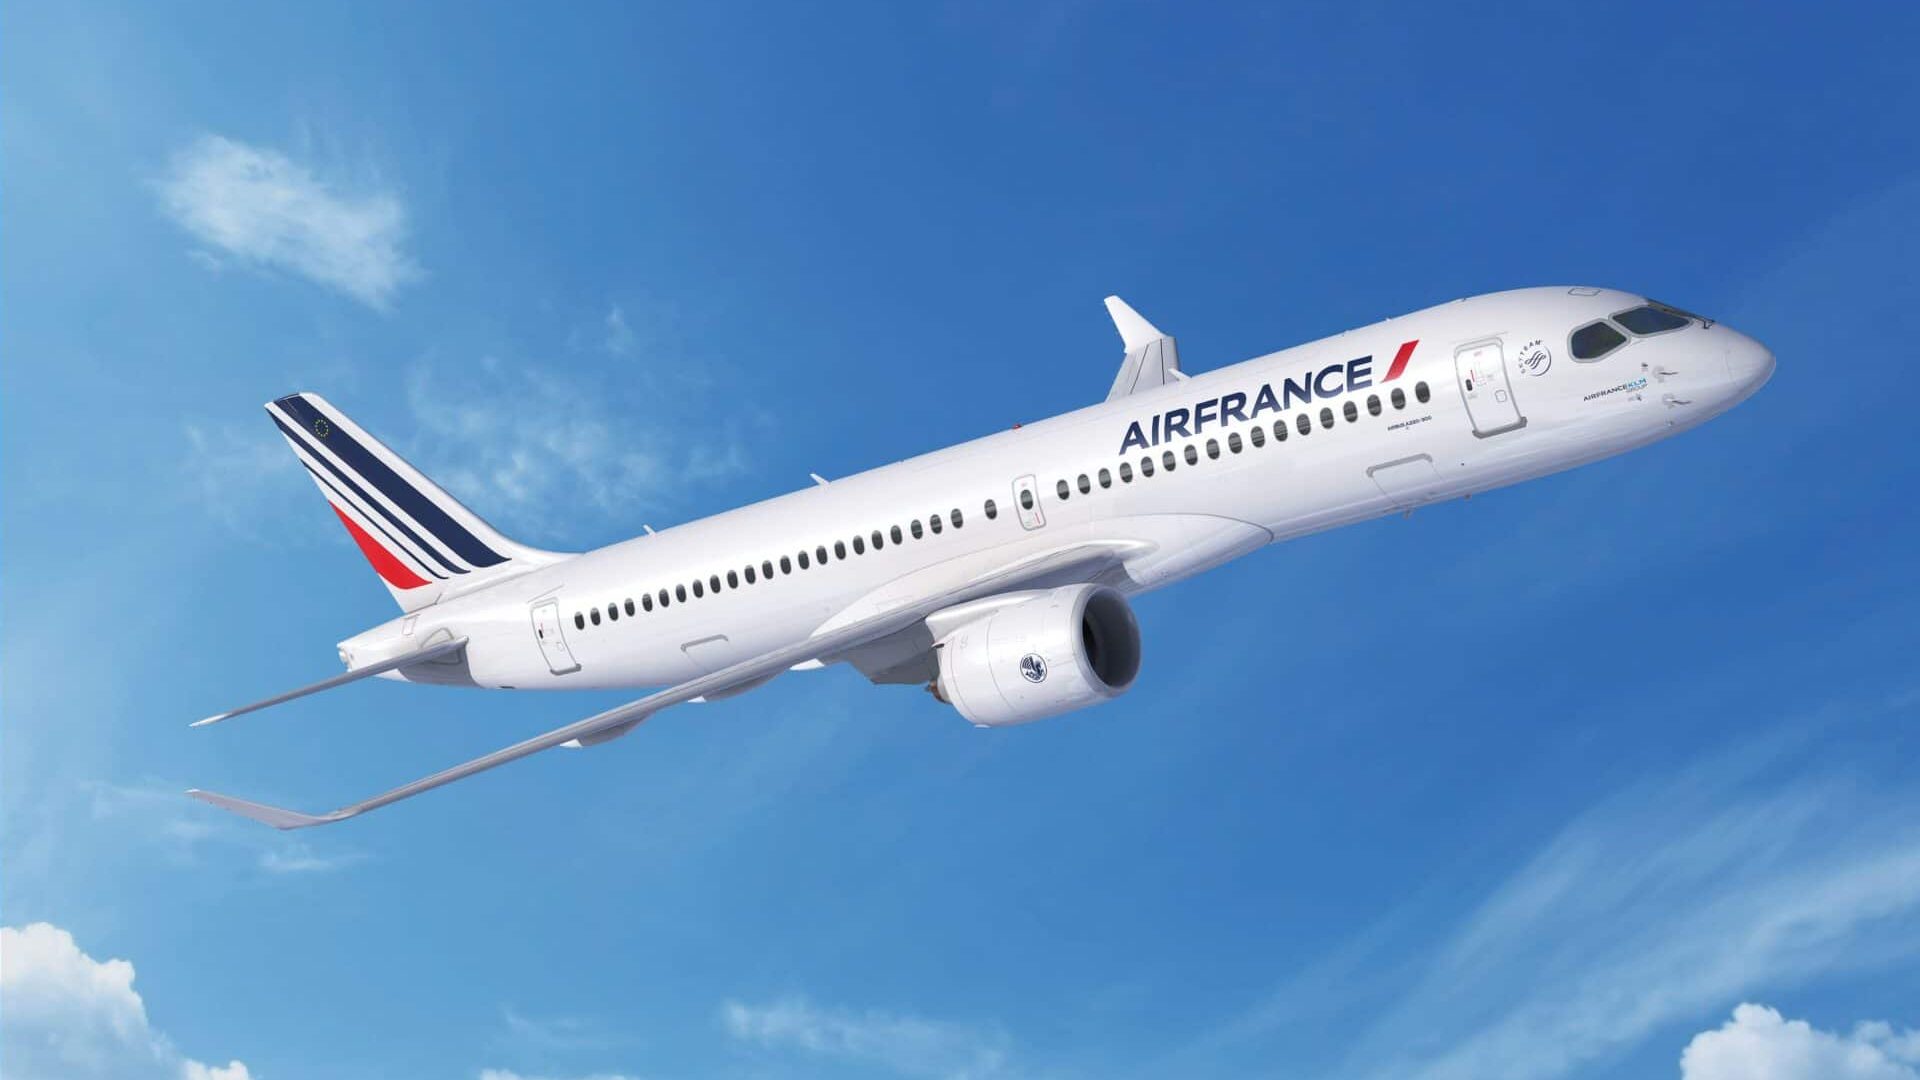 Air France’s A220 300